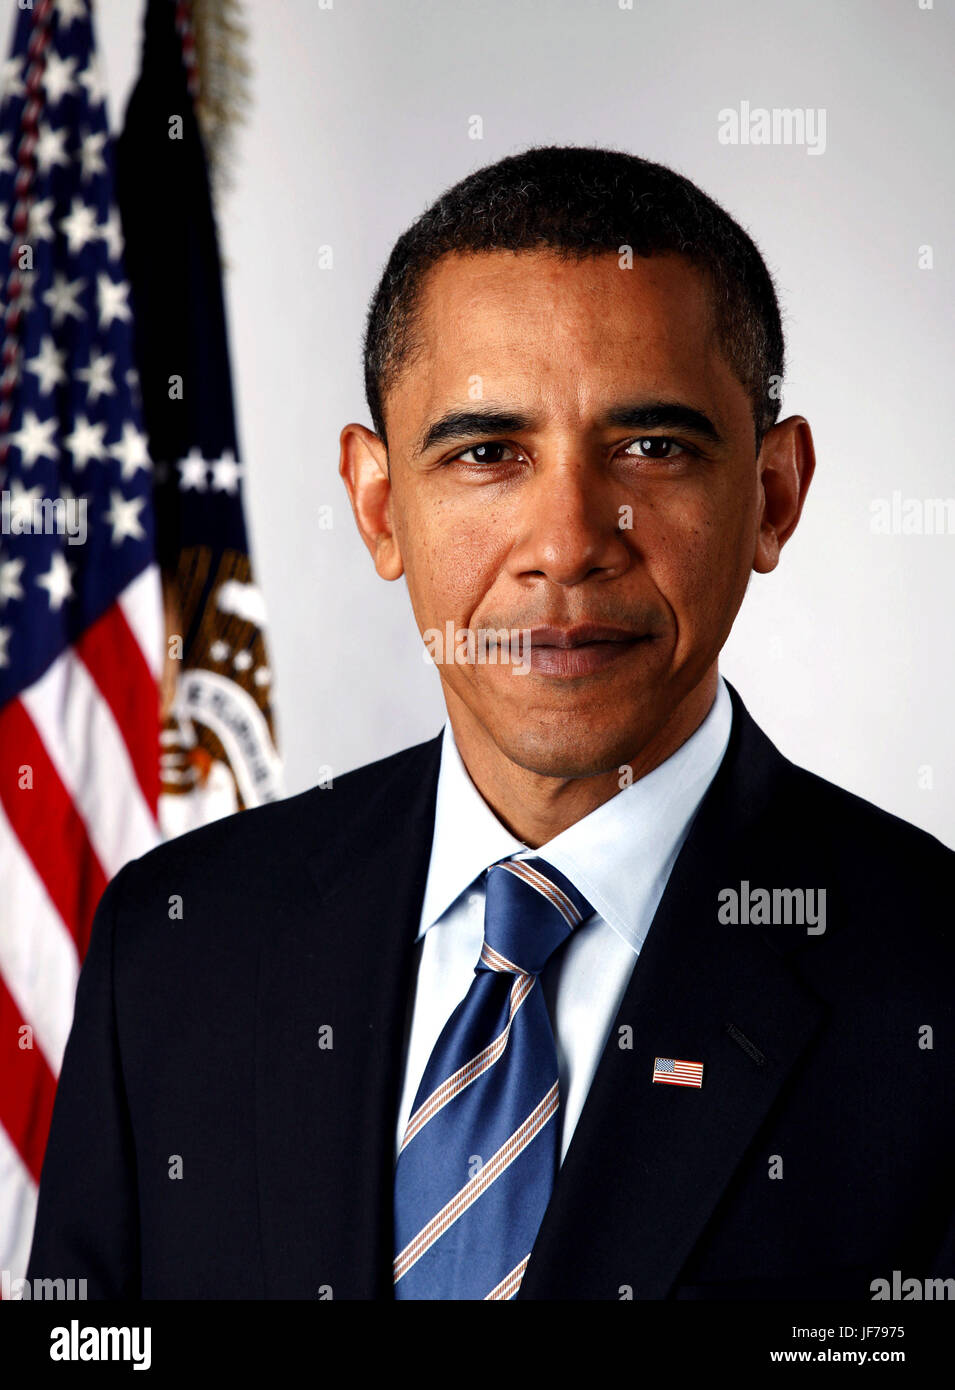 Portrait officiel du président élu Barack Obama le jan. 13, 2009...le président Barack Obama. h. Photographie par Pete Souza. Banque D'Images